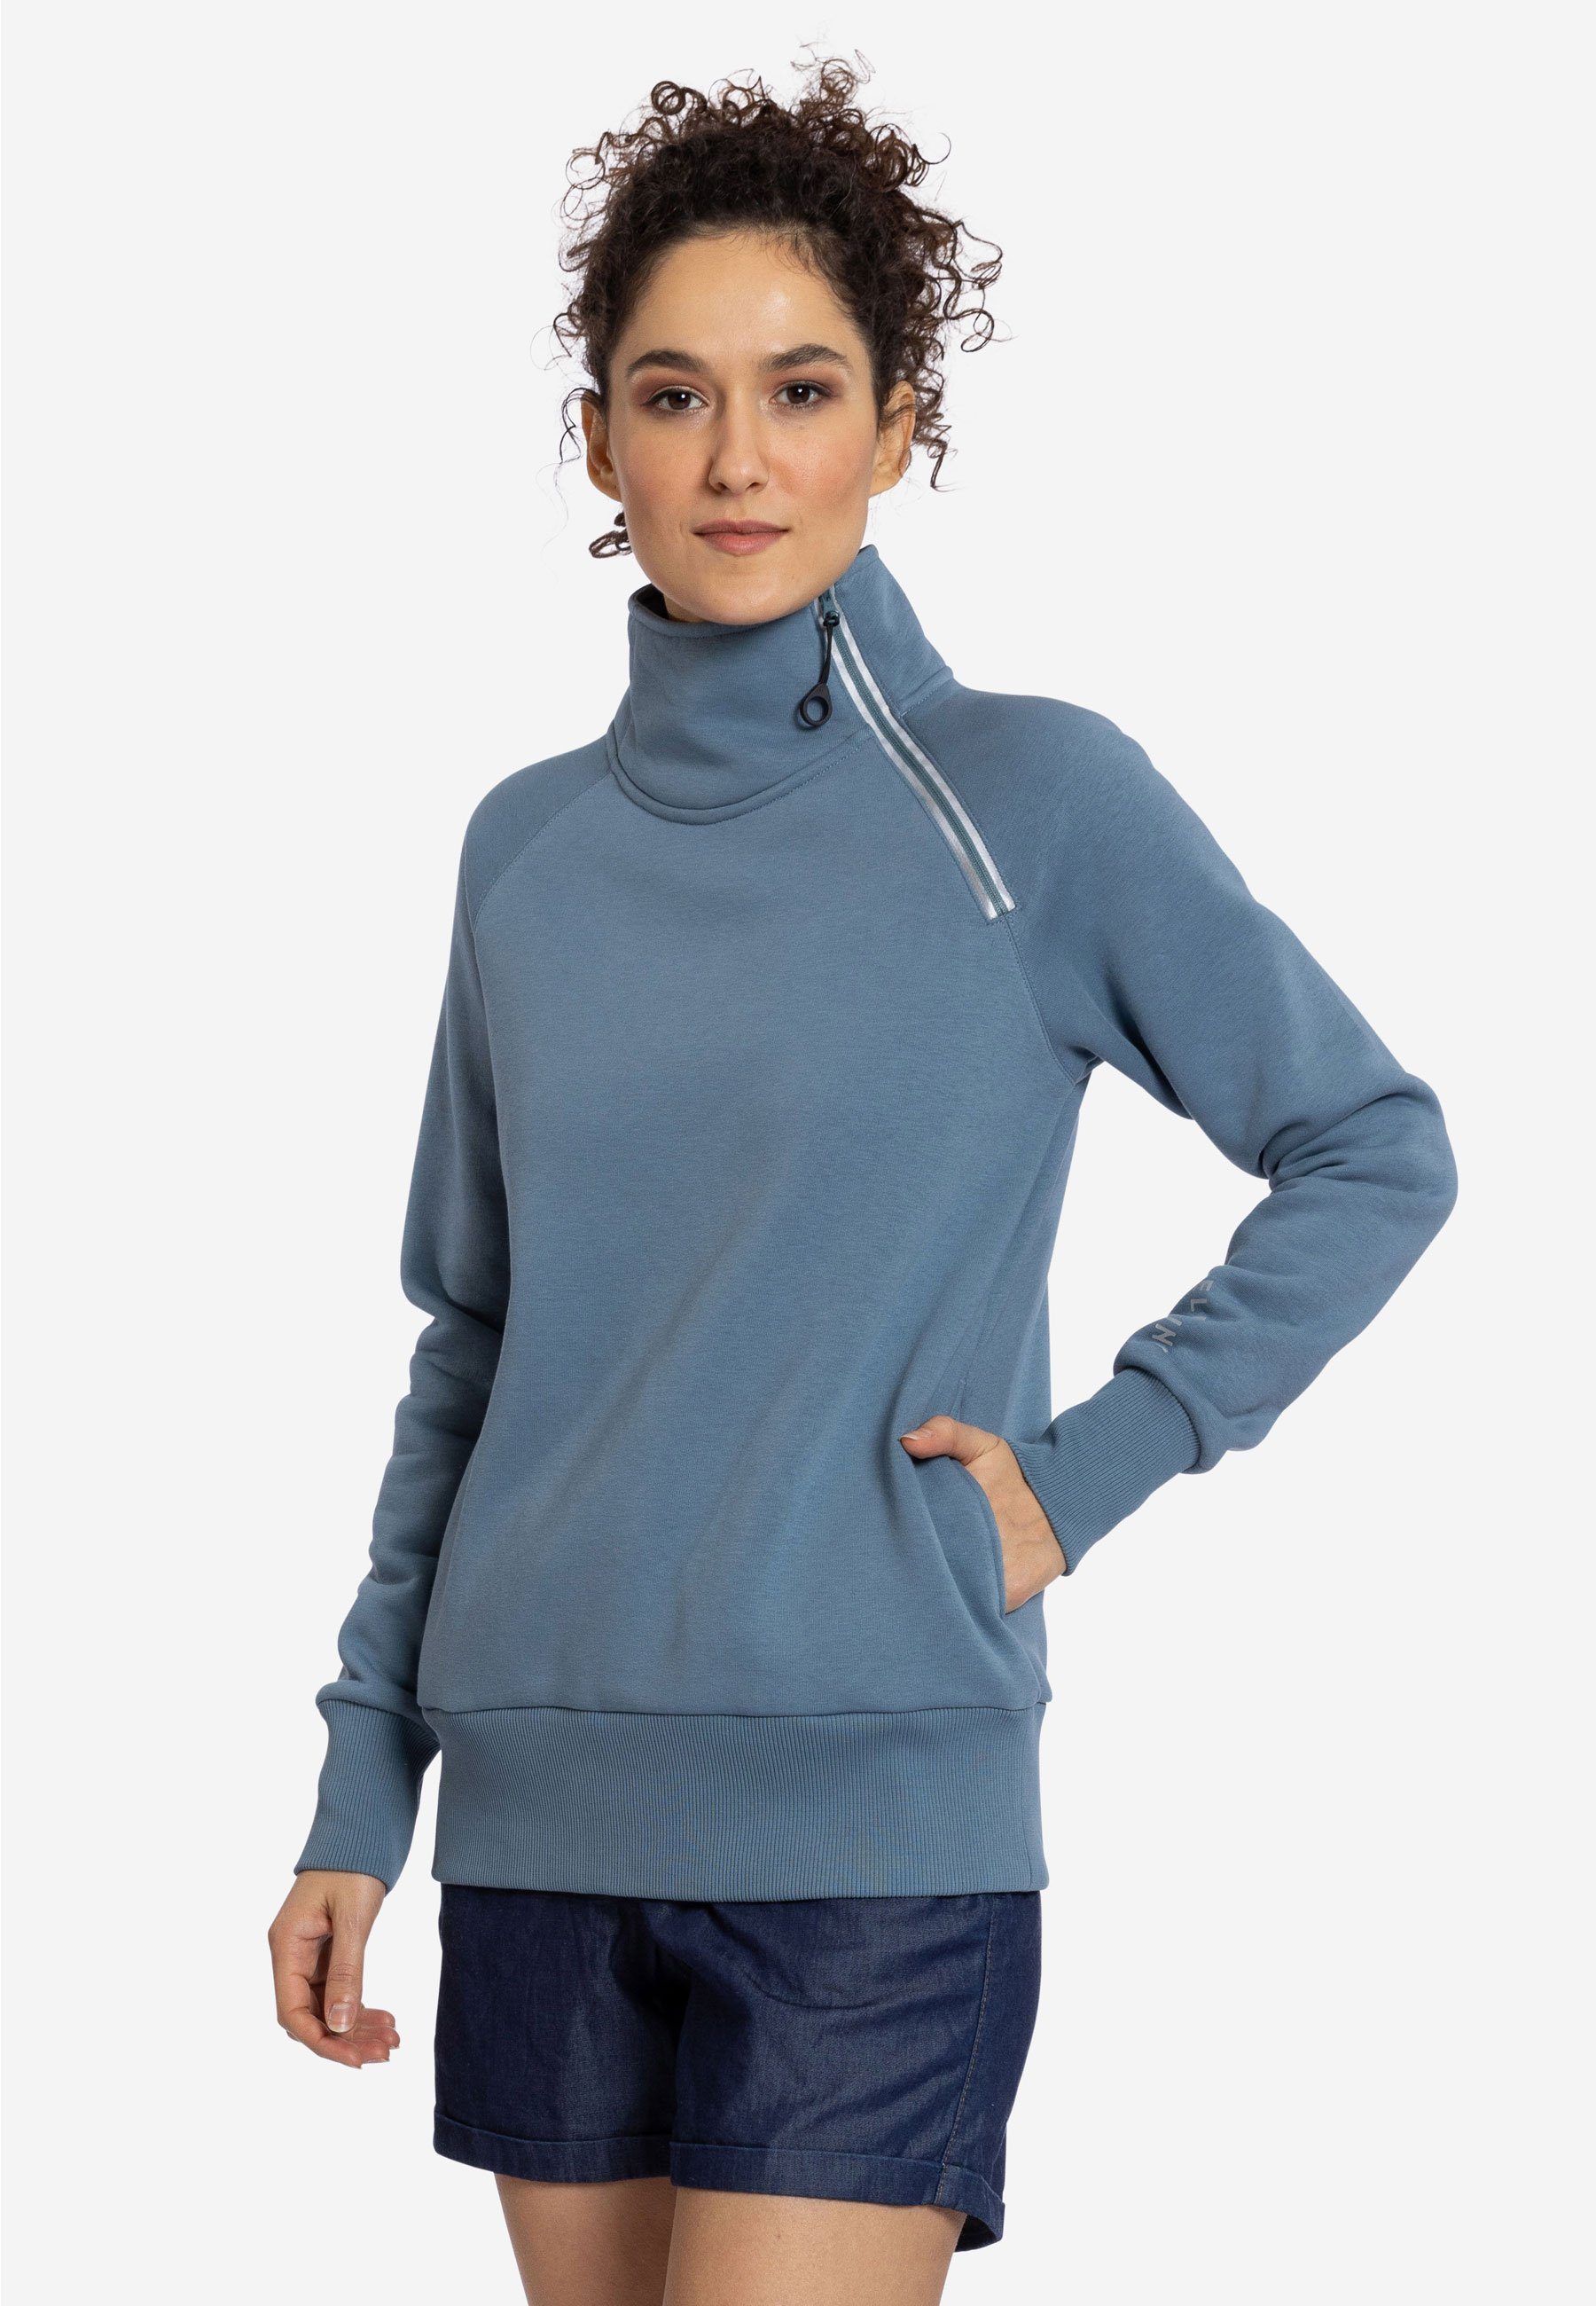 Elkline Sweatshirt Performance Stehkragen ashblue und mit Seitentaschen Reißverschluss